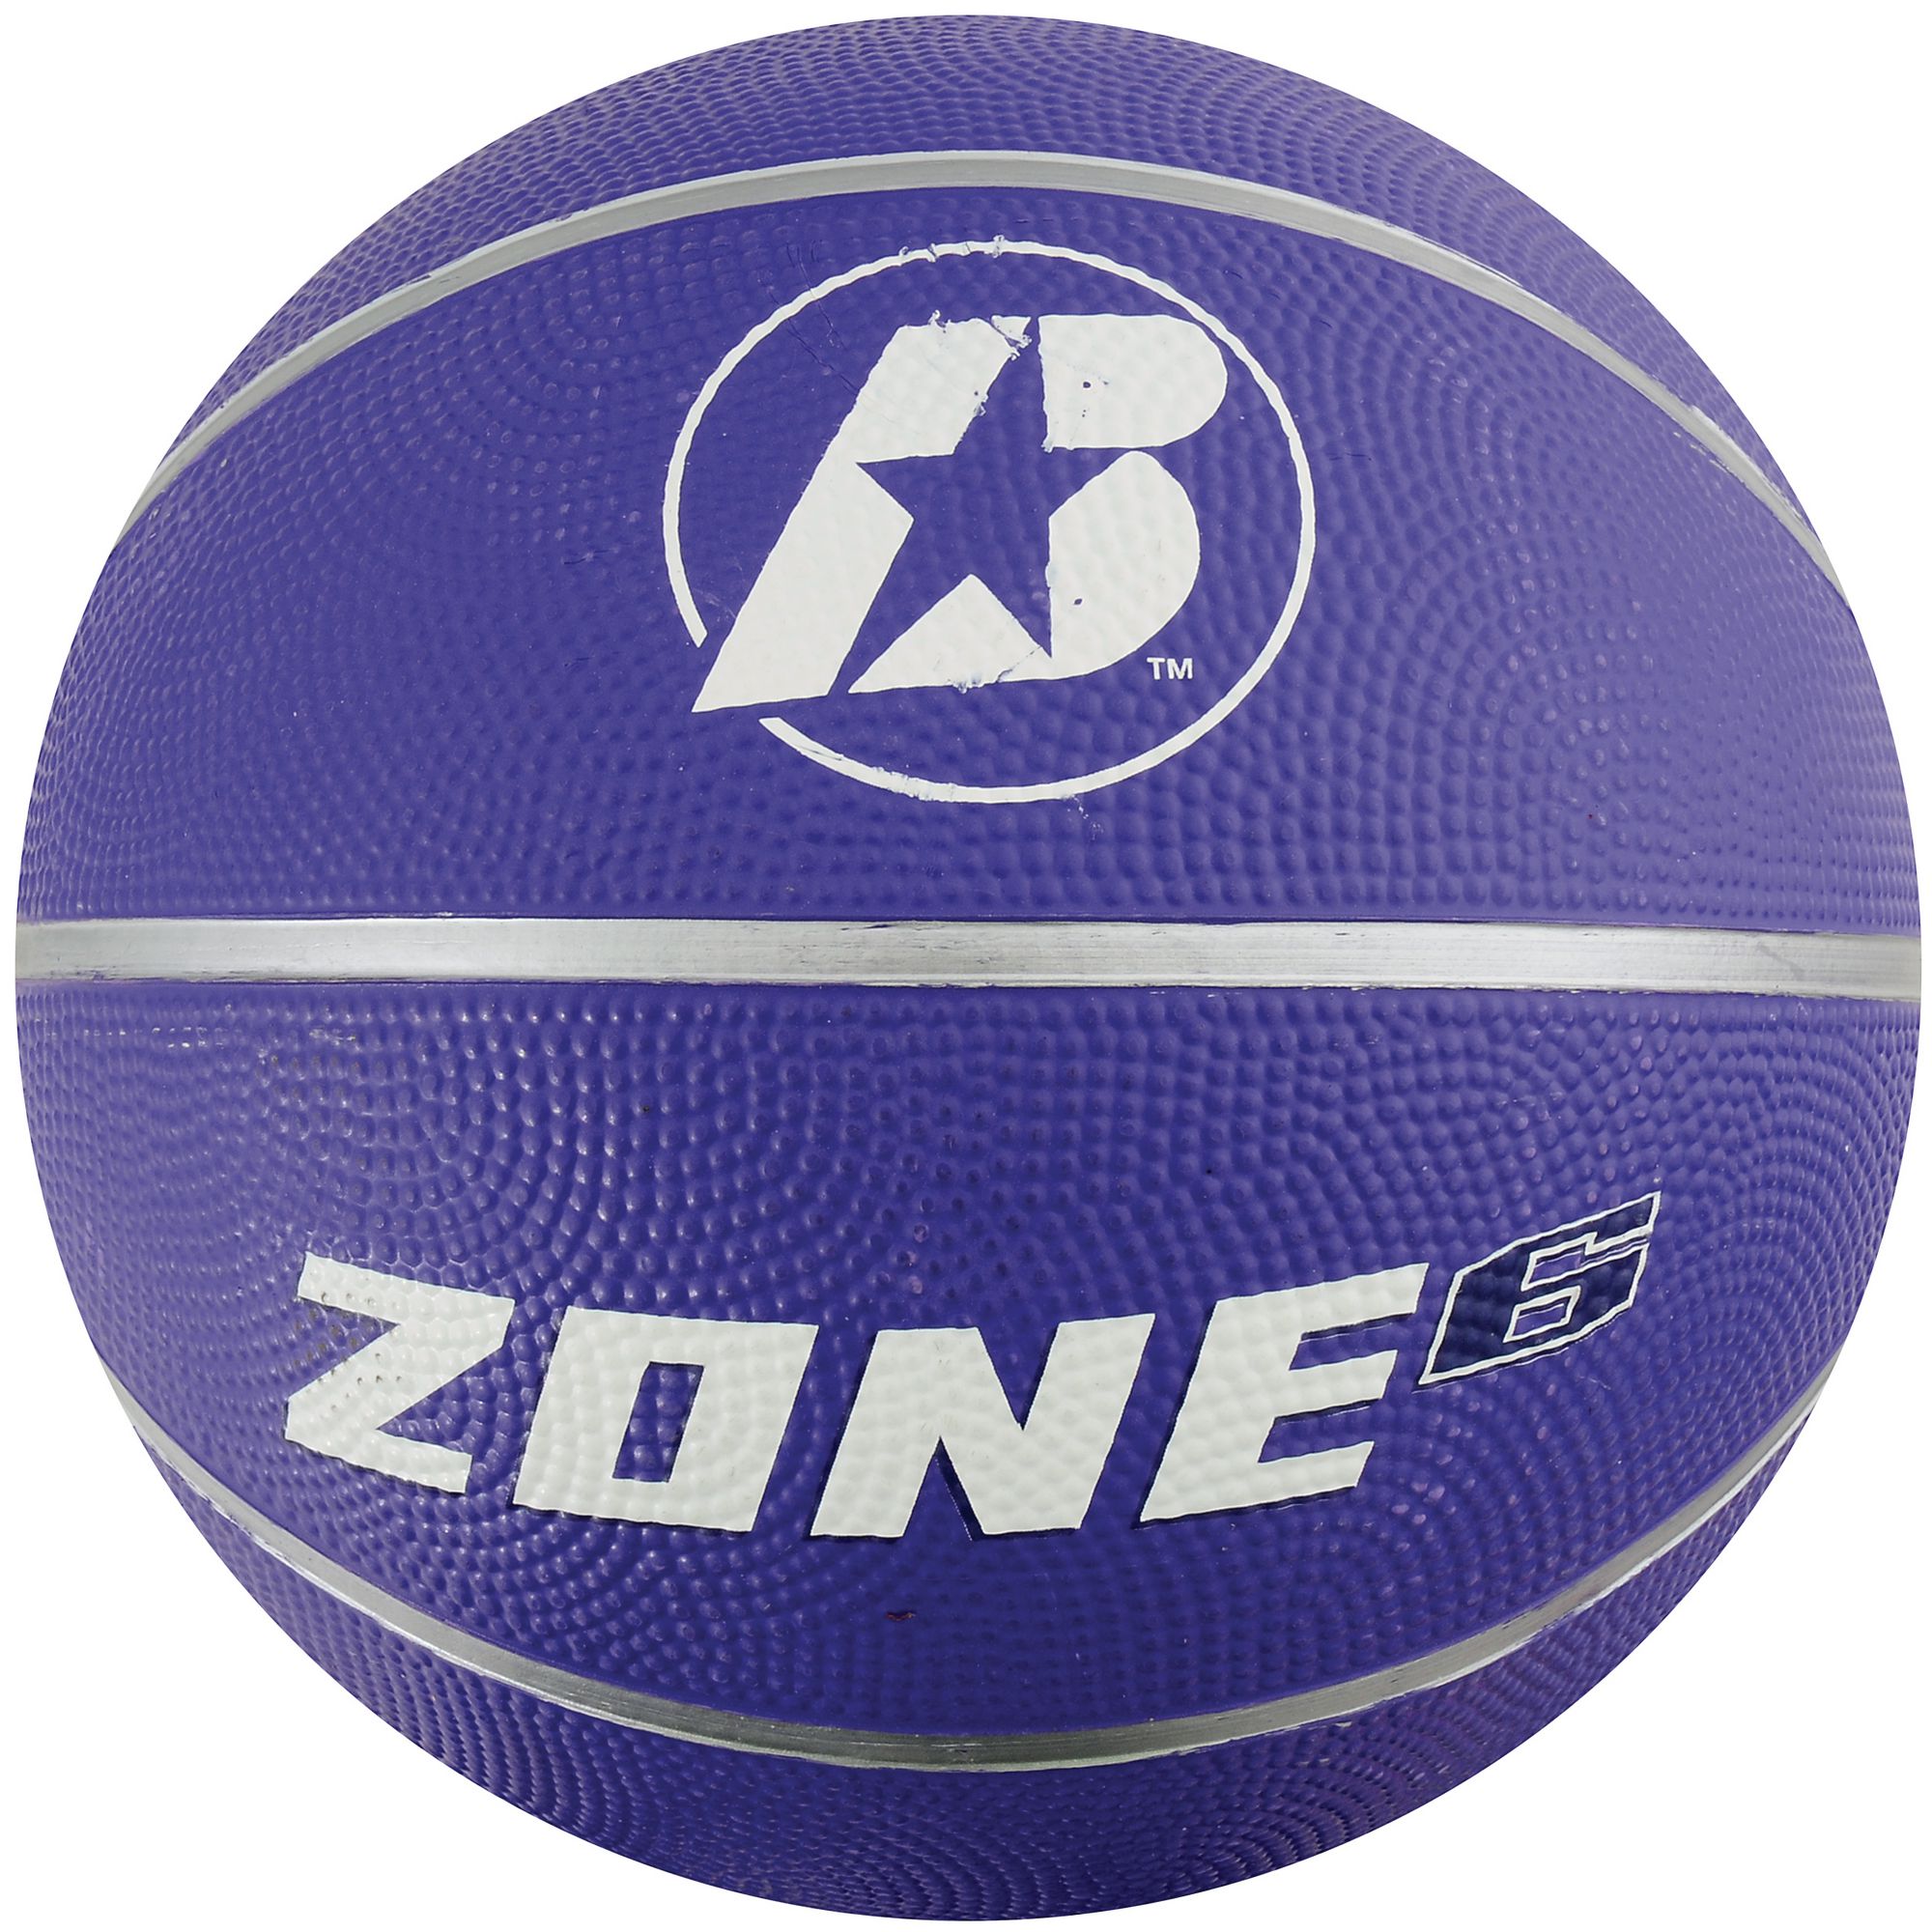 B?íden Zone Basketball - Purple - Size 6